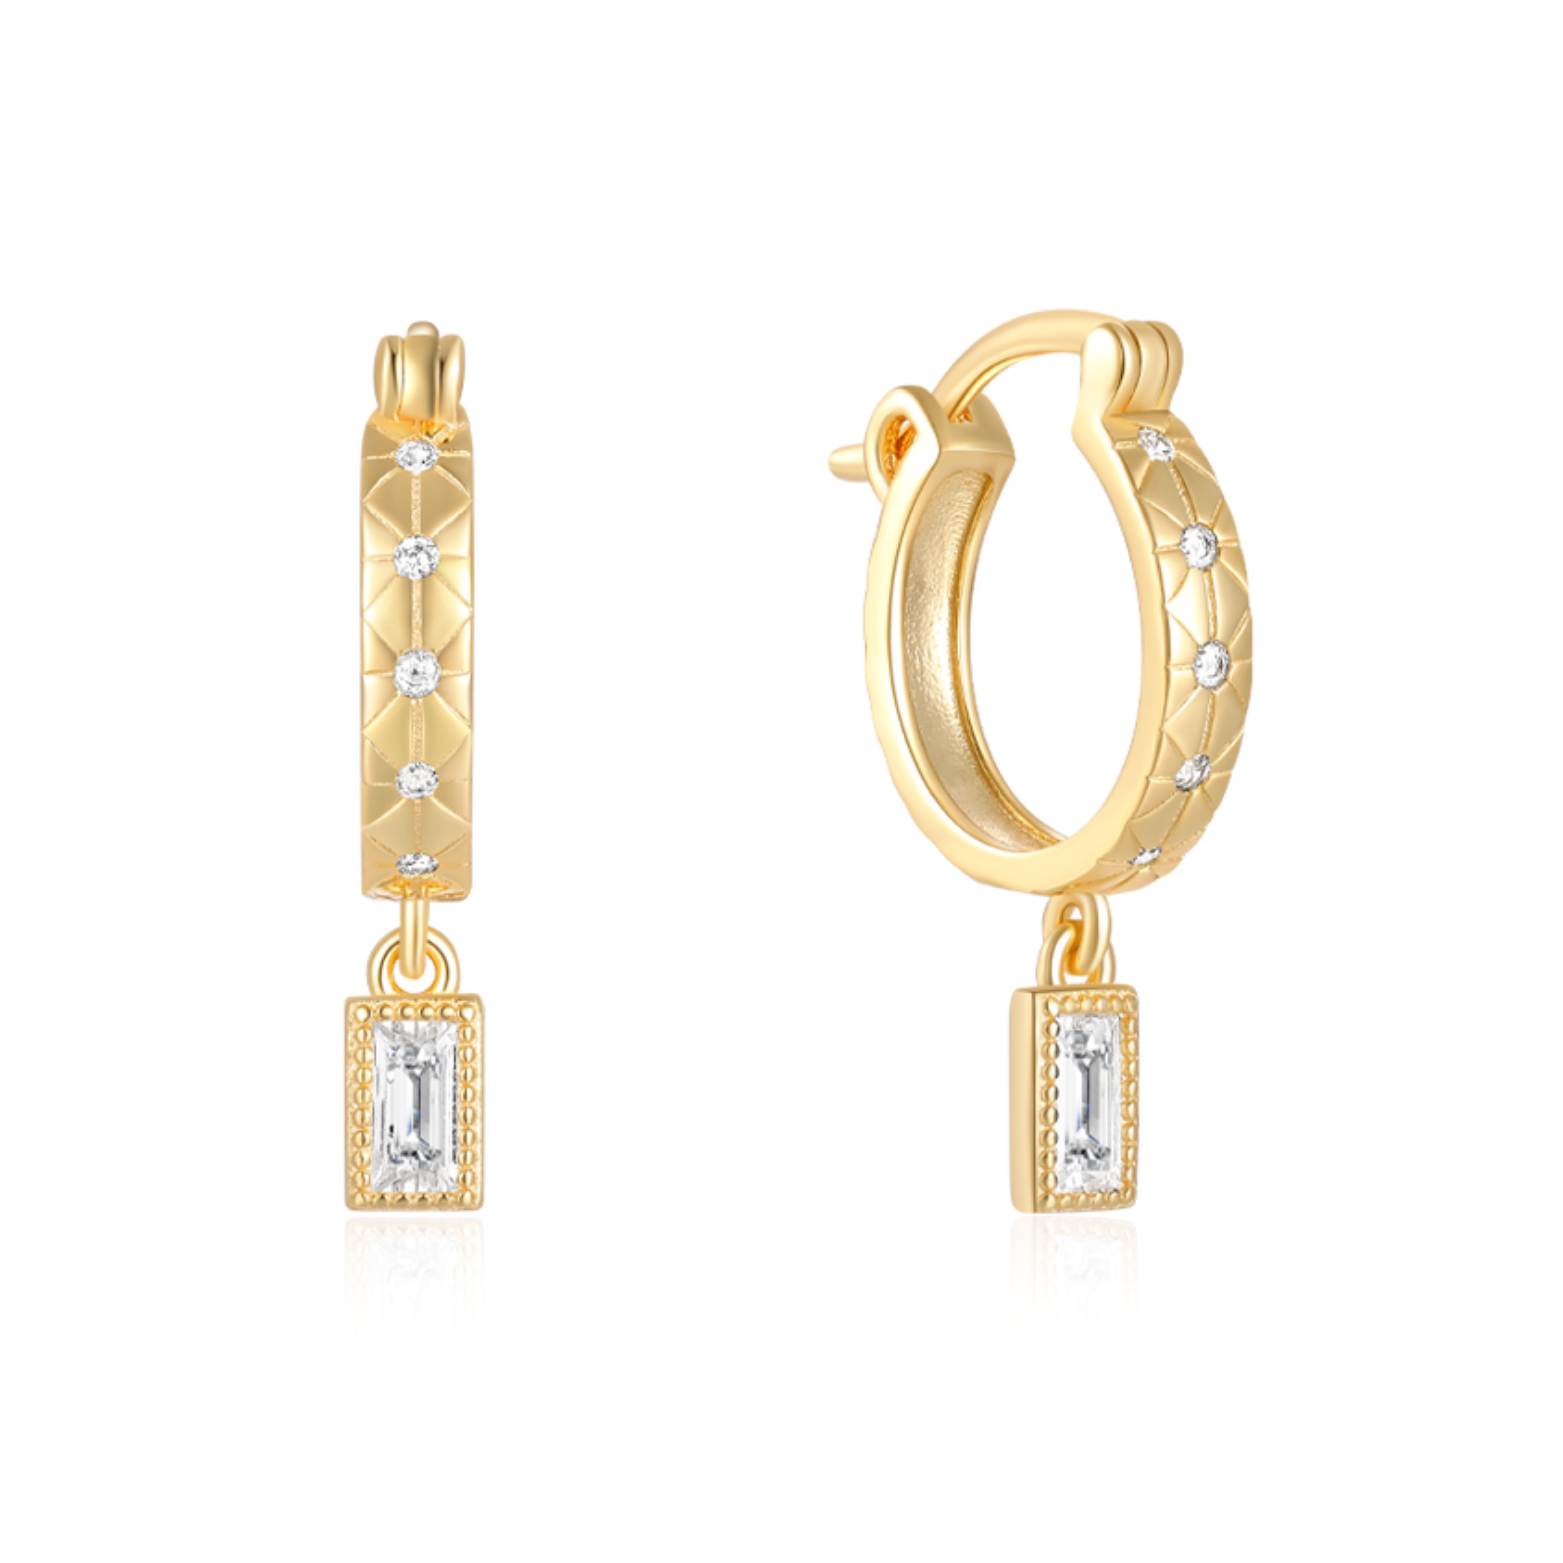 14K gold plated Skylar Hoops earrings on display